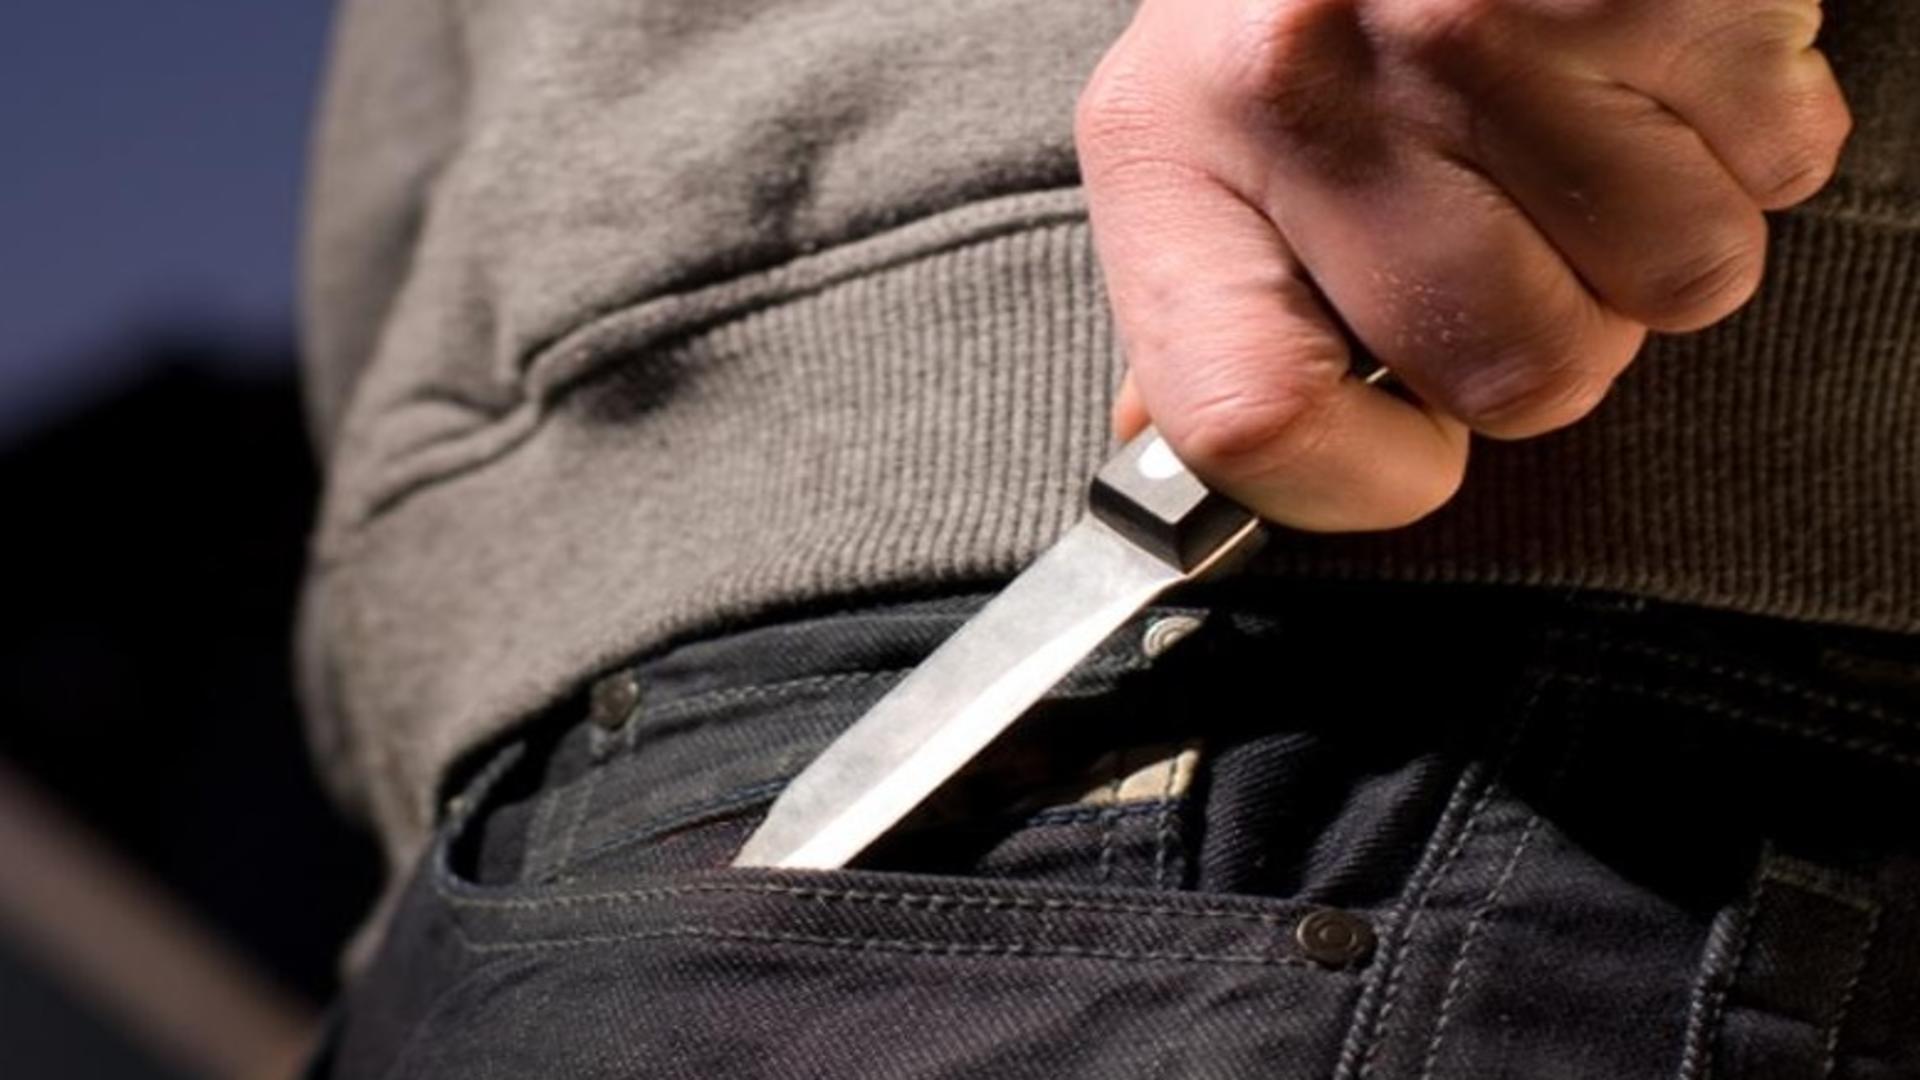 Bărbatul care a înjunghiat o femeie cu un cuţit, în Centrul Vechi, a fost arestat preventiv. Care este starea victimei/ Arhivă foto